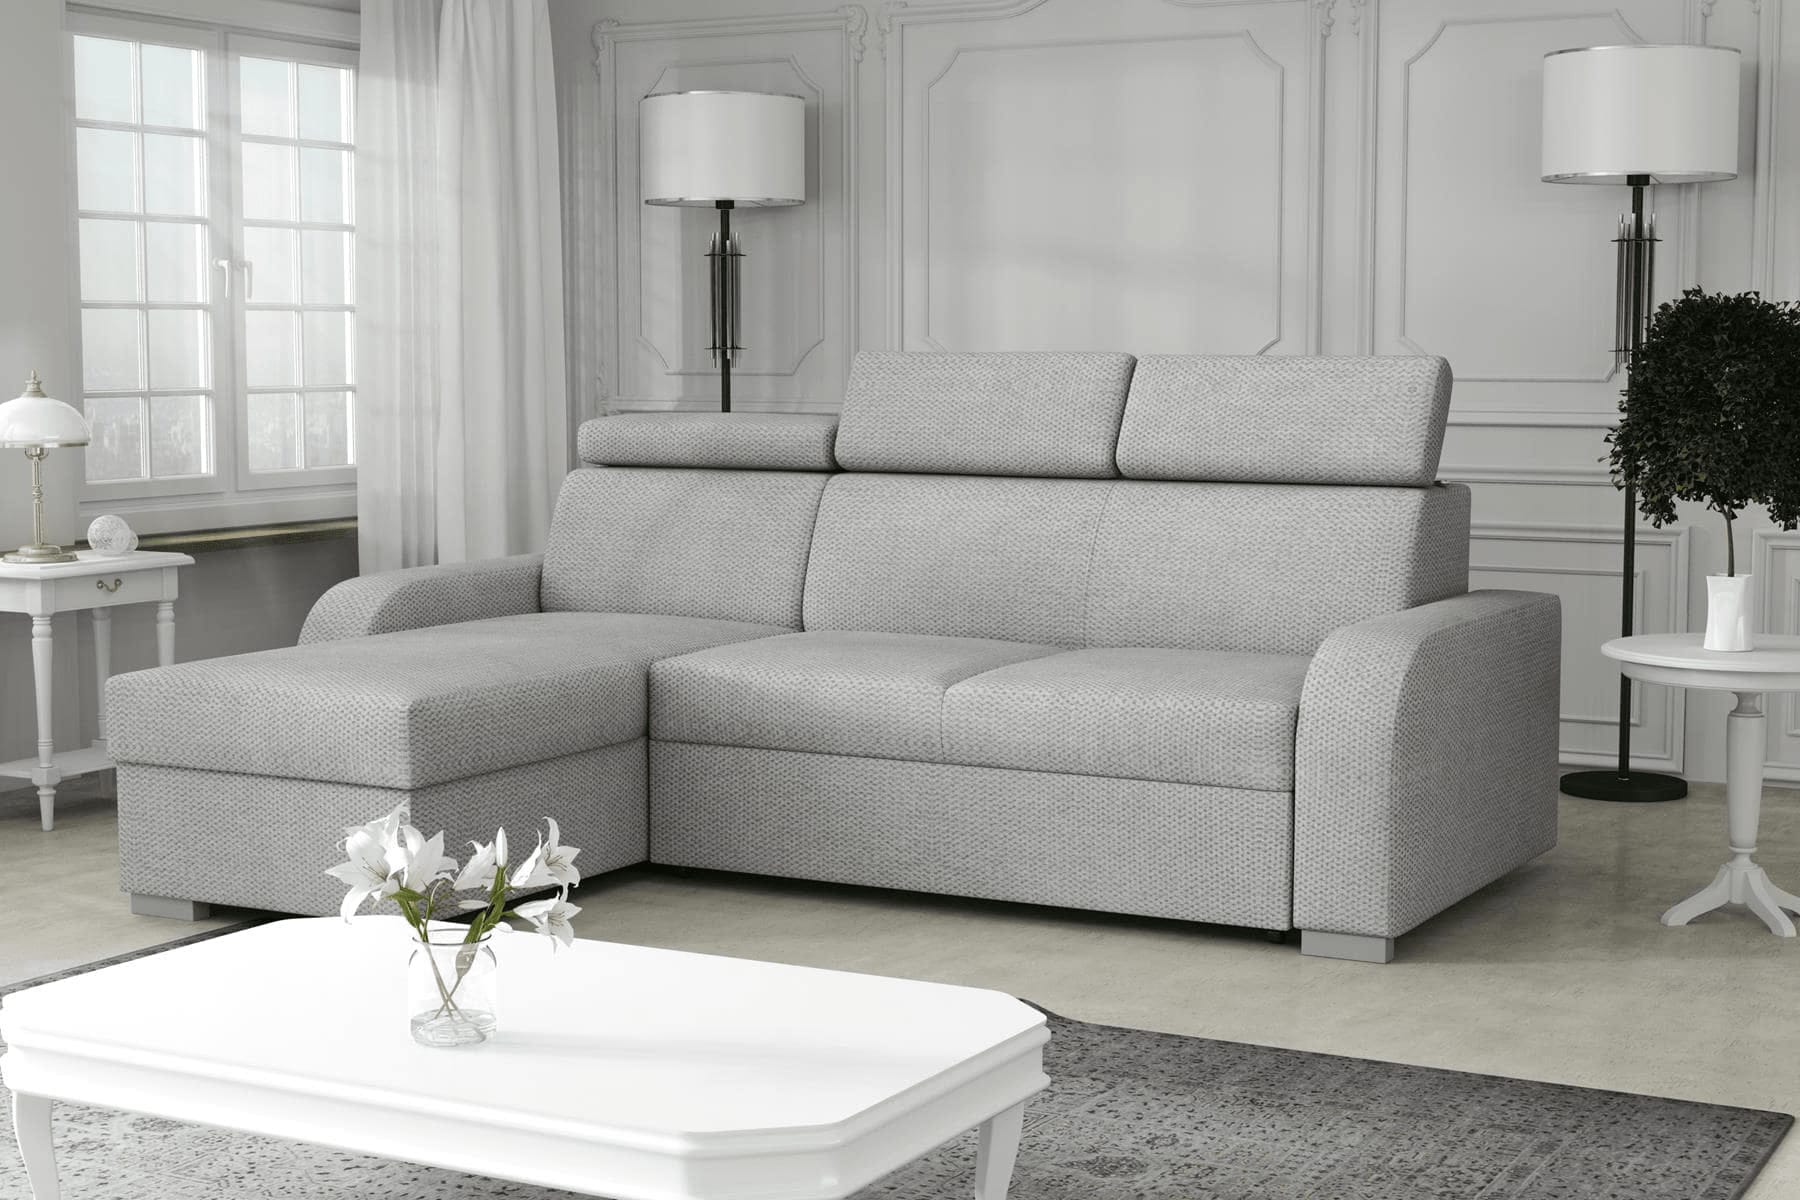 C J C Furniture Birmingham 01213 278529